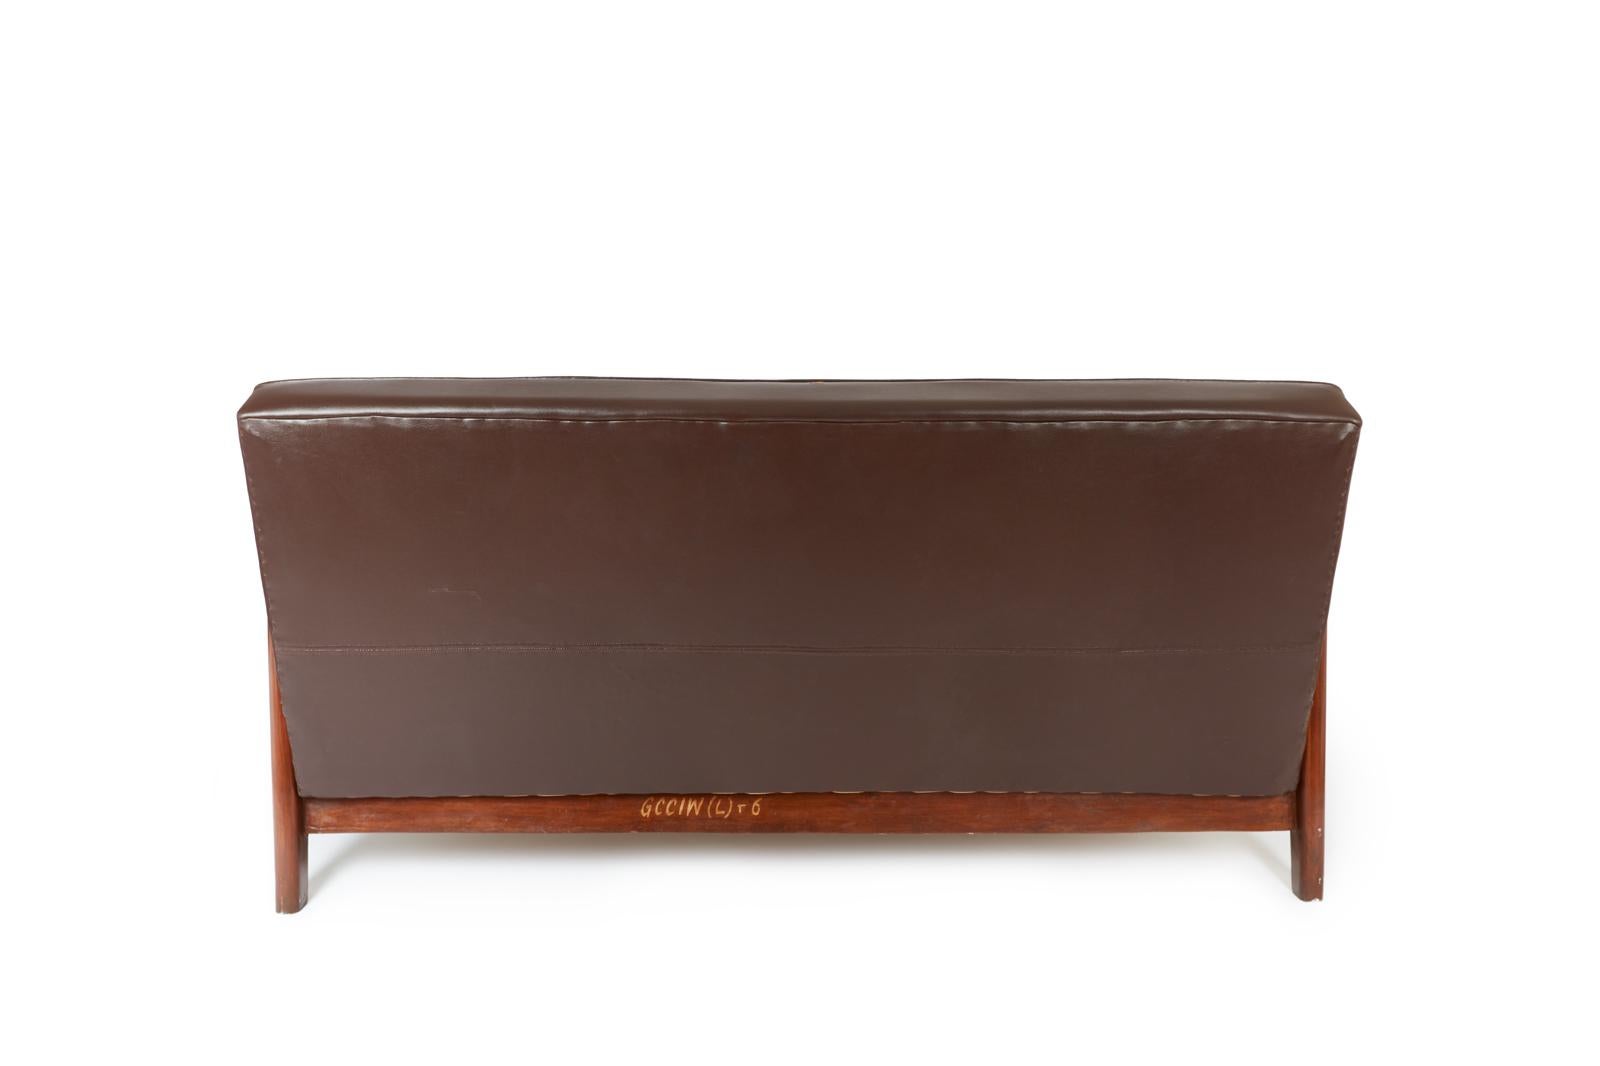 Seltenes Sofa aus Teakholz und dunkelbraunem Kunstleder aus dem Hohen Gericht von Chandigarh (Sektor 1, Capitol Complex), entworfen von Pierre Jeanneret und Le Corbusier. 
Dieses Modell hat eine leicht abfallende Rückenlehne und eine solide